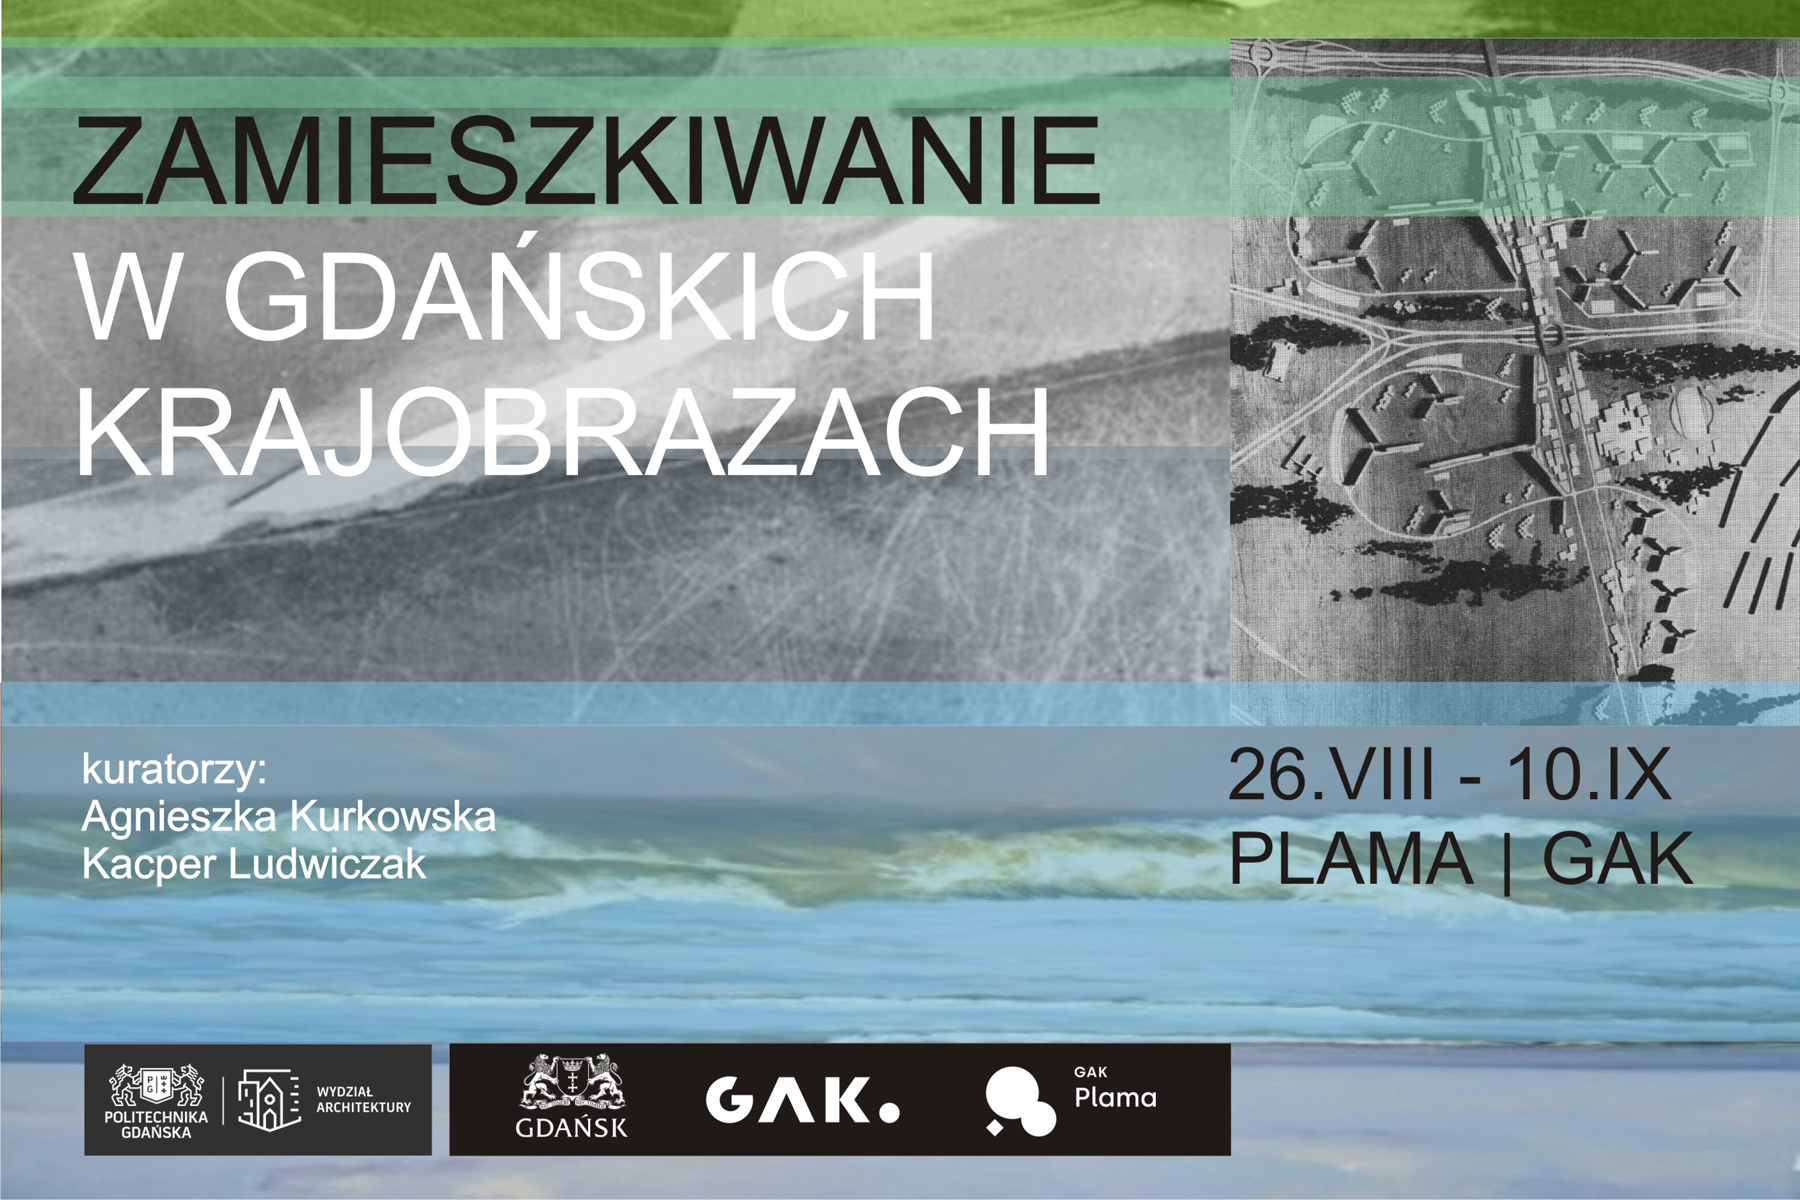 Plakat informacyjny na temat wystawy "Zamieszkiwanie w gdańskich krajobrazach"